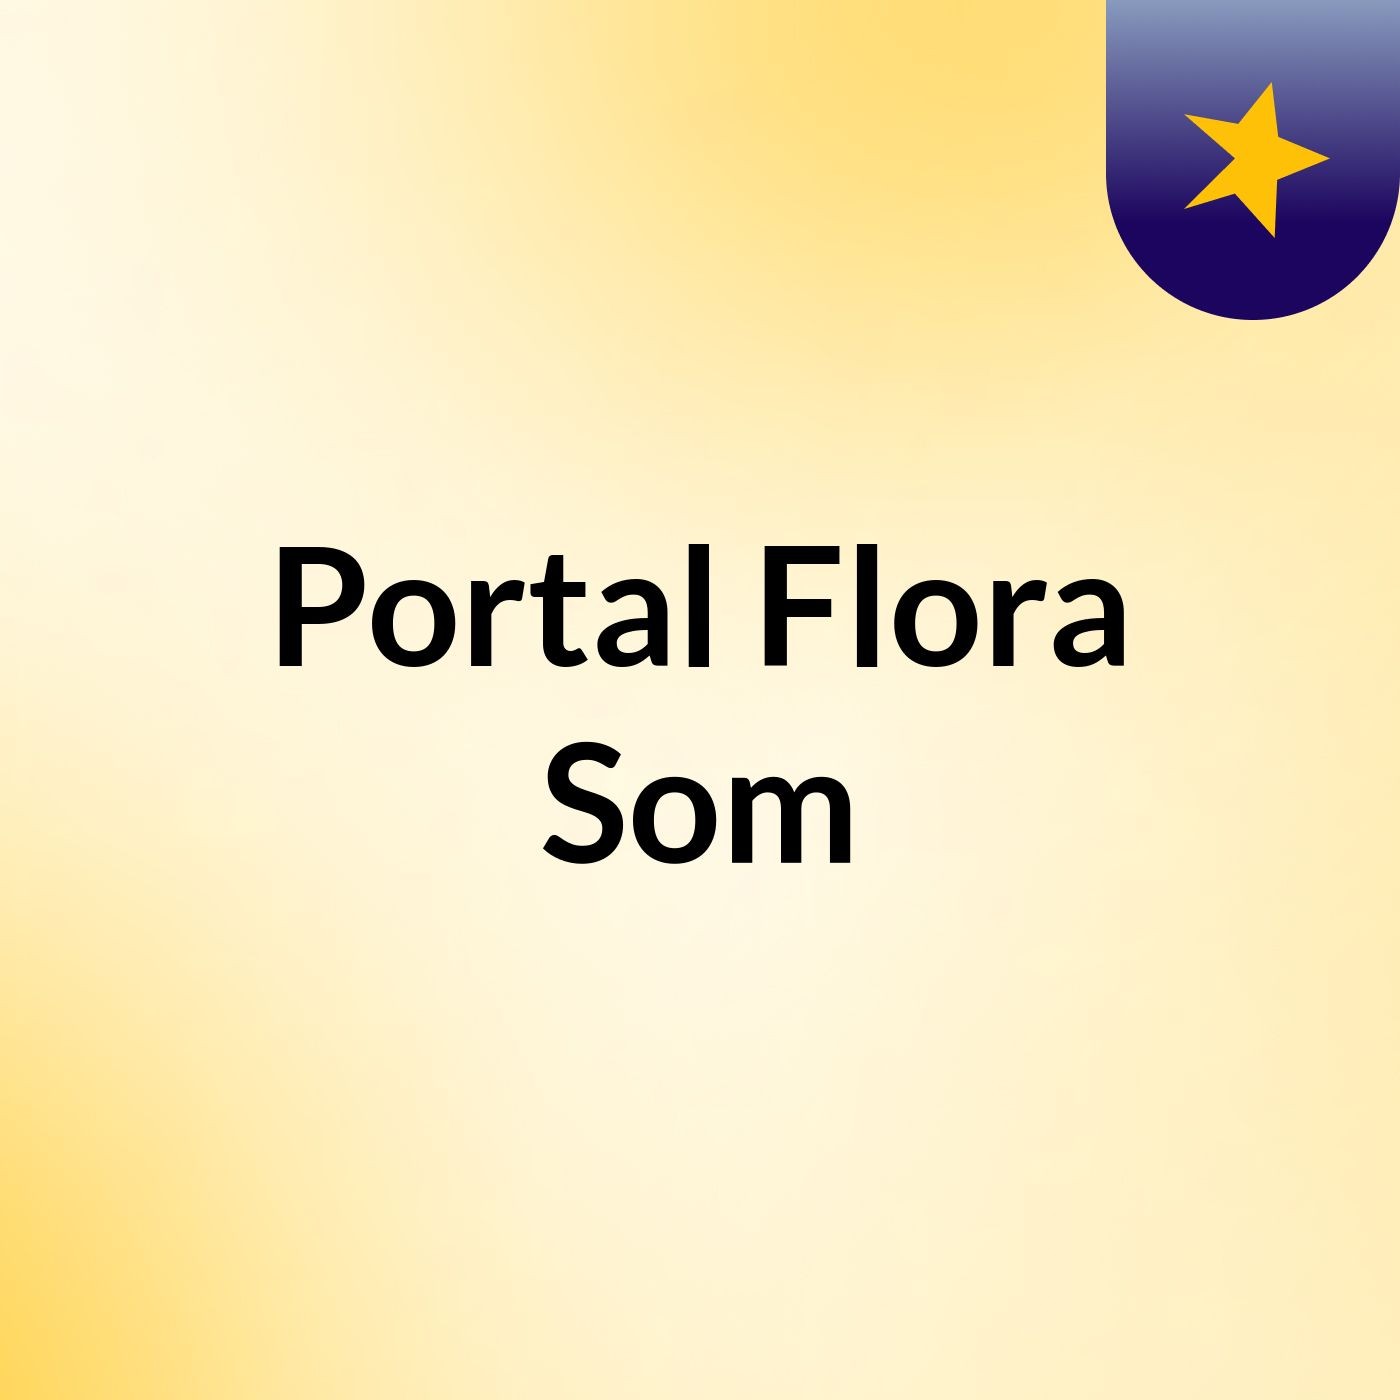 Portal Flora Som